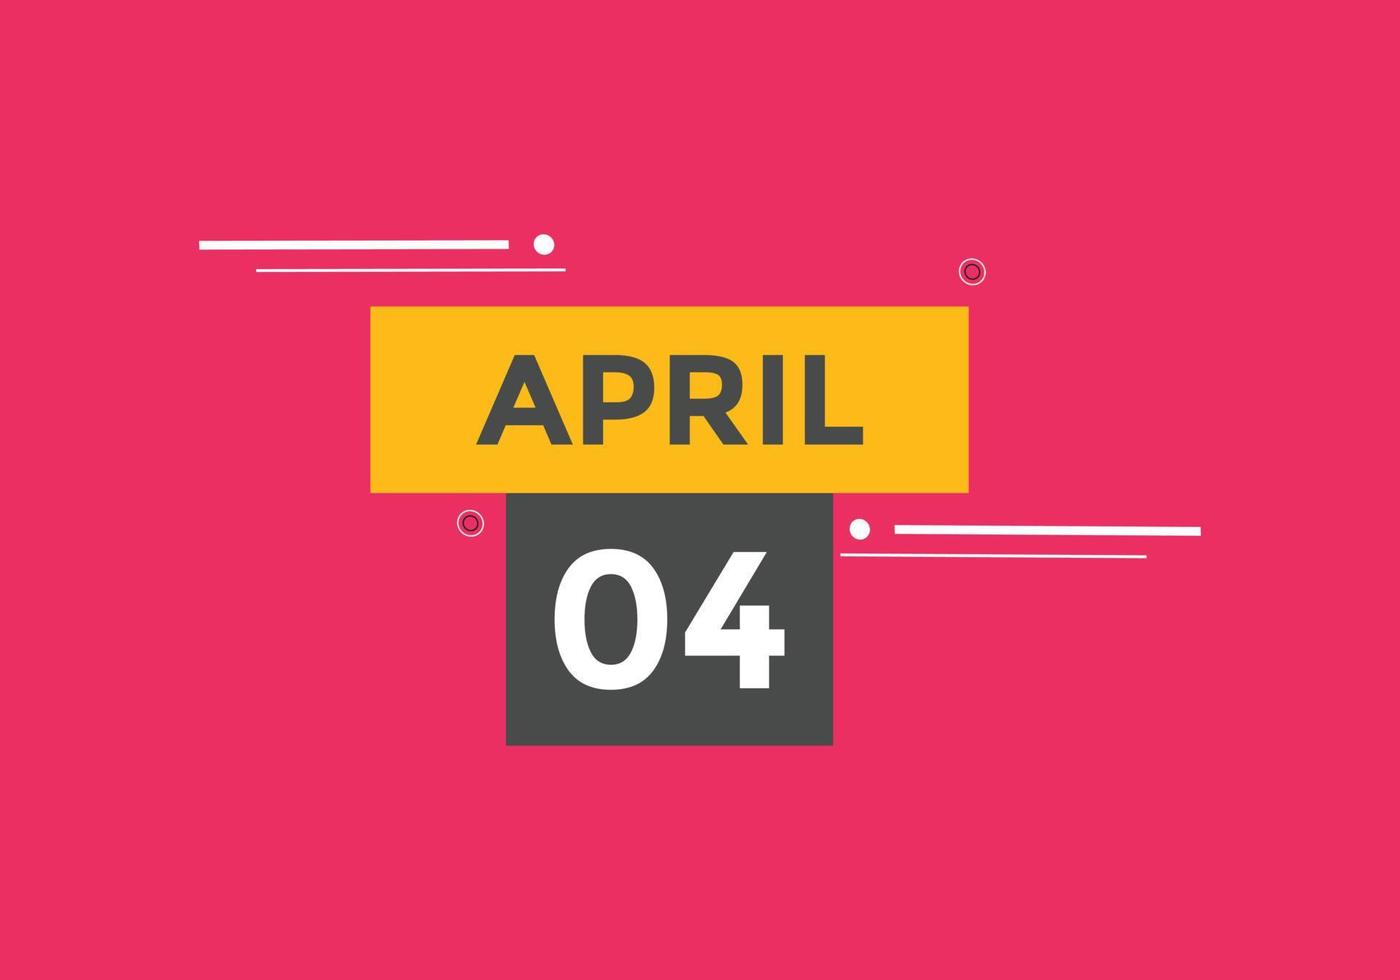 Recordatorio del calendario del 4 de abril. Plantilla de icono de calendario diario del 4 de abril. calendario 4 de abril plantilla de diseño de iconos. ilustración vectorial vector